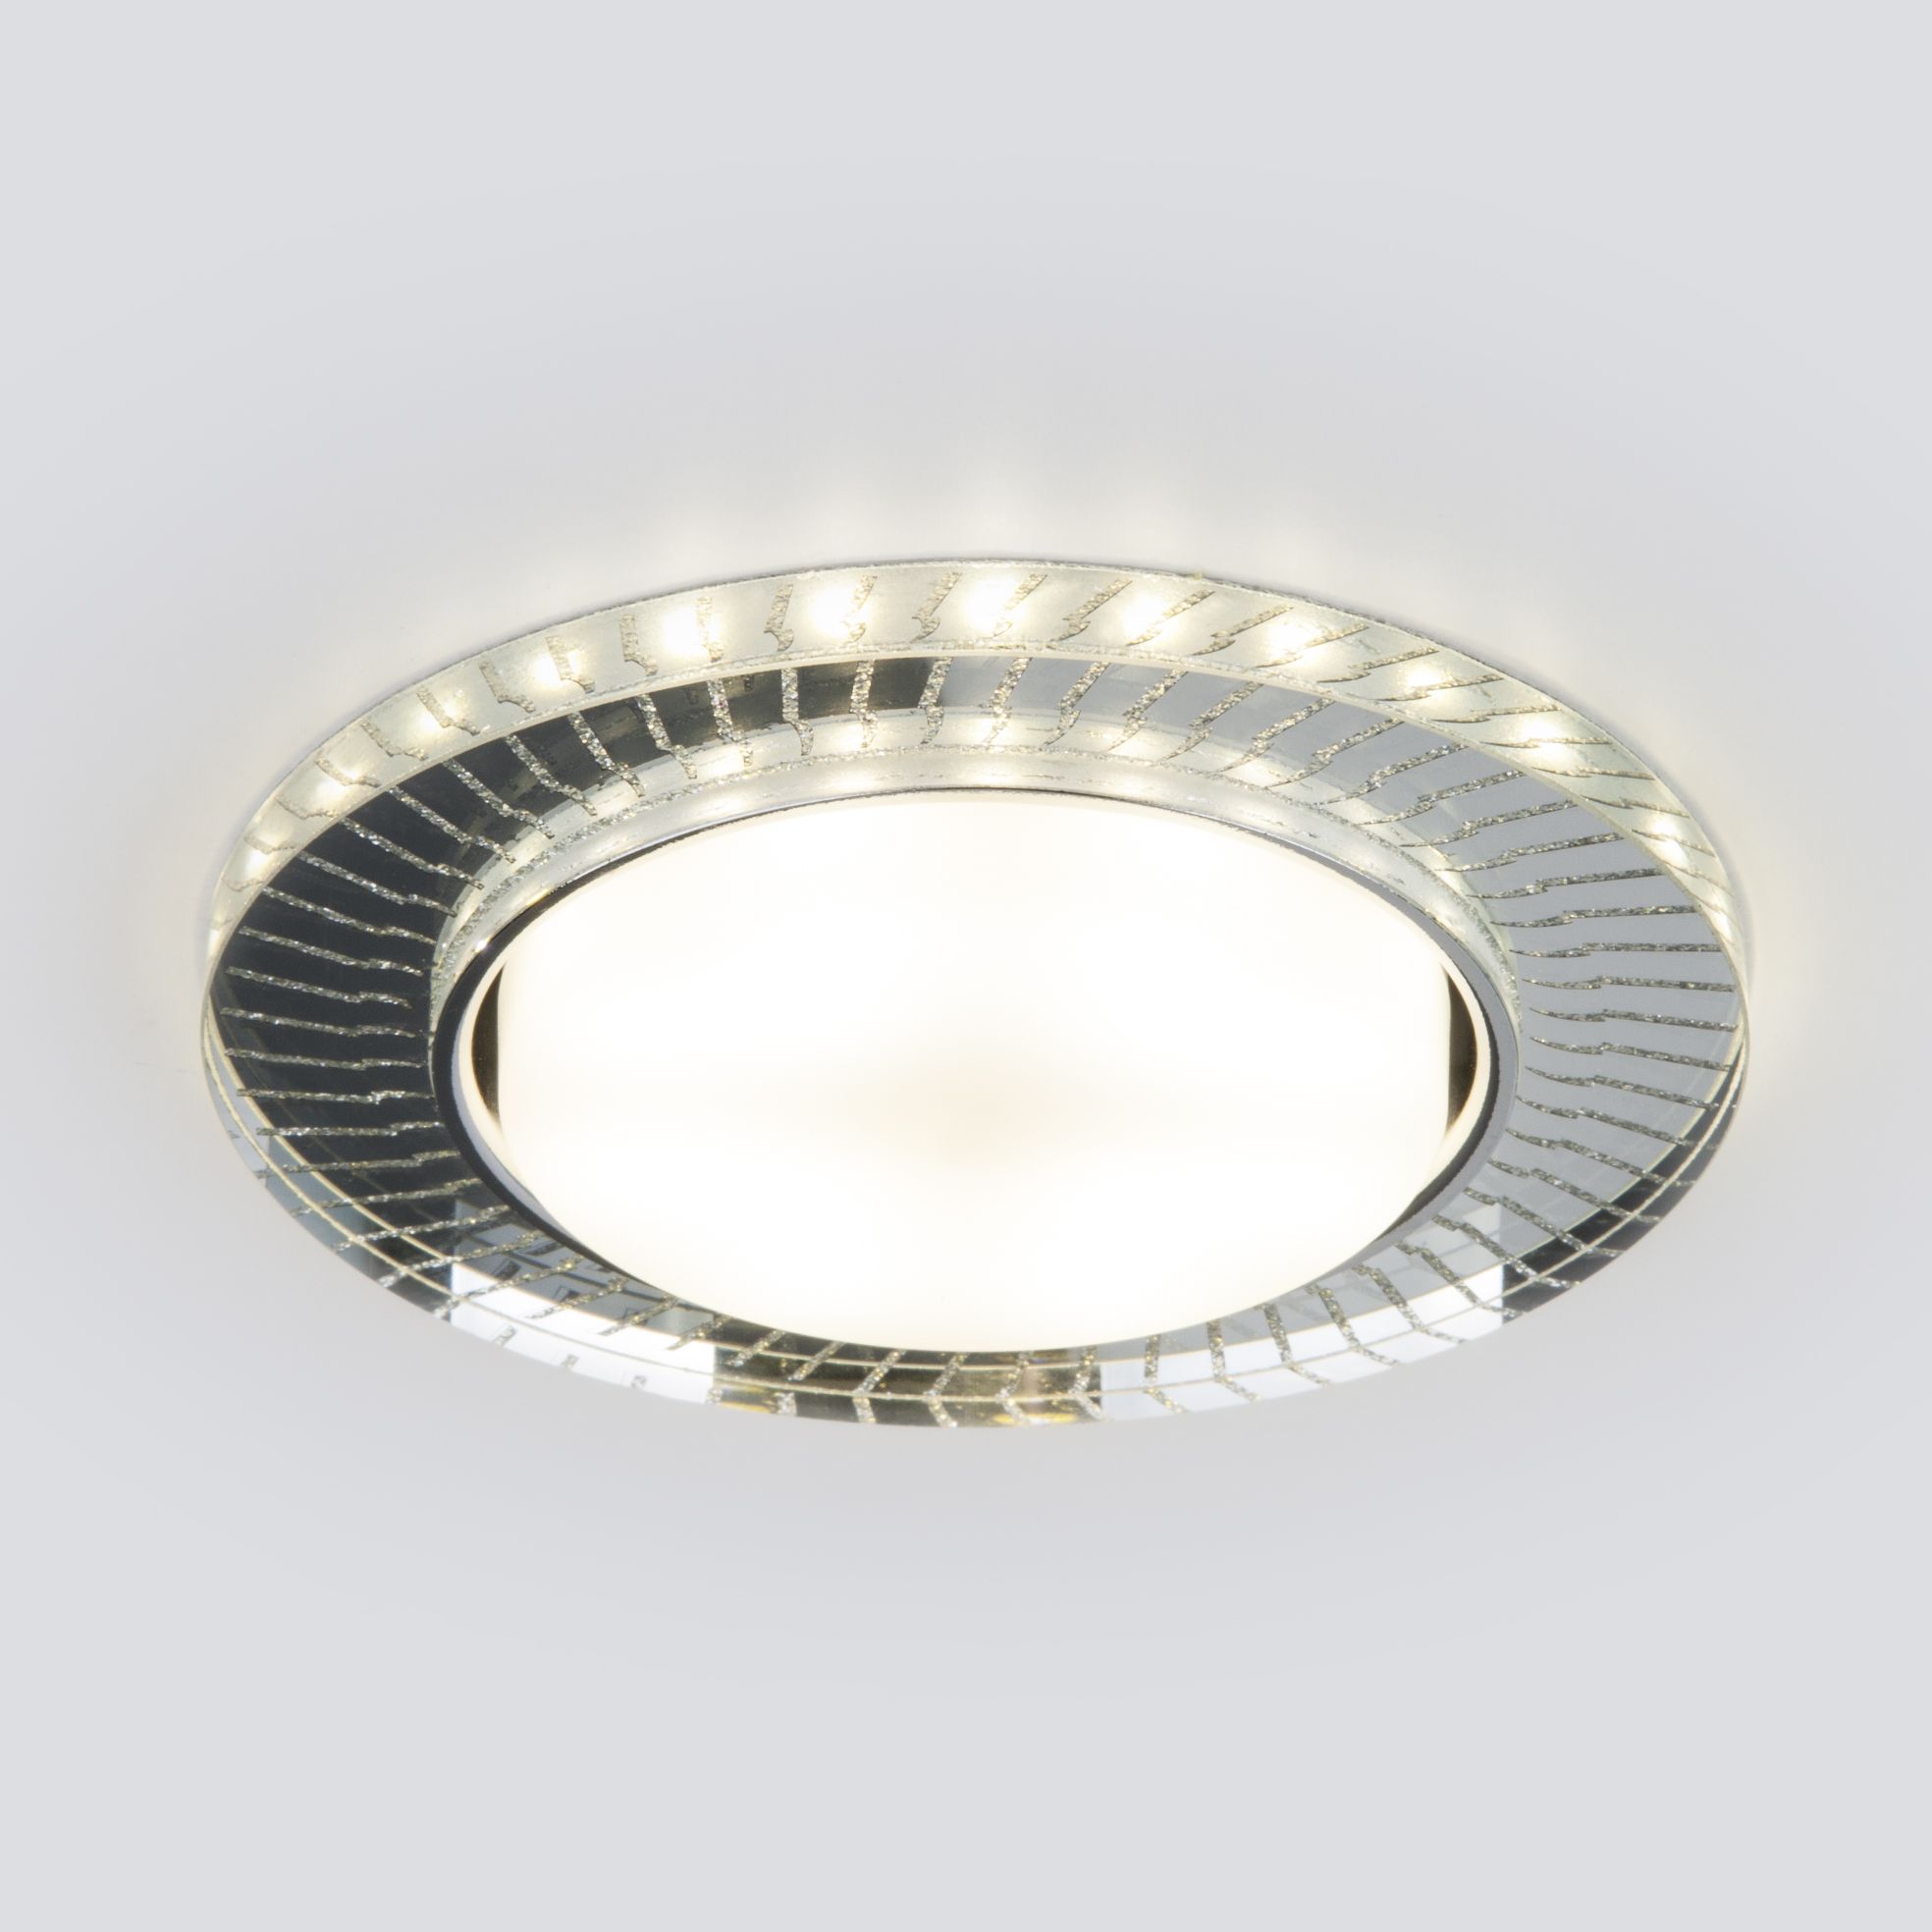 Встраиваемый точечный светильник с LED подсветкой 3033 GX53 CL/SL прозрачный/серебро 3033 GX53 CL/SL прозрачный/серебро